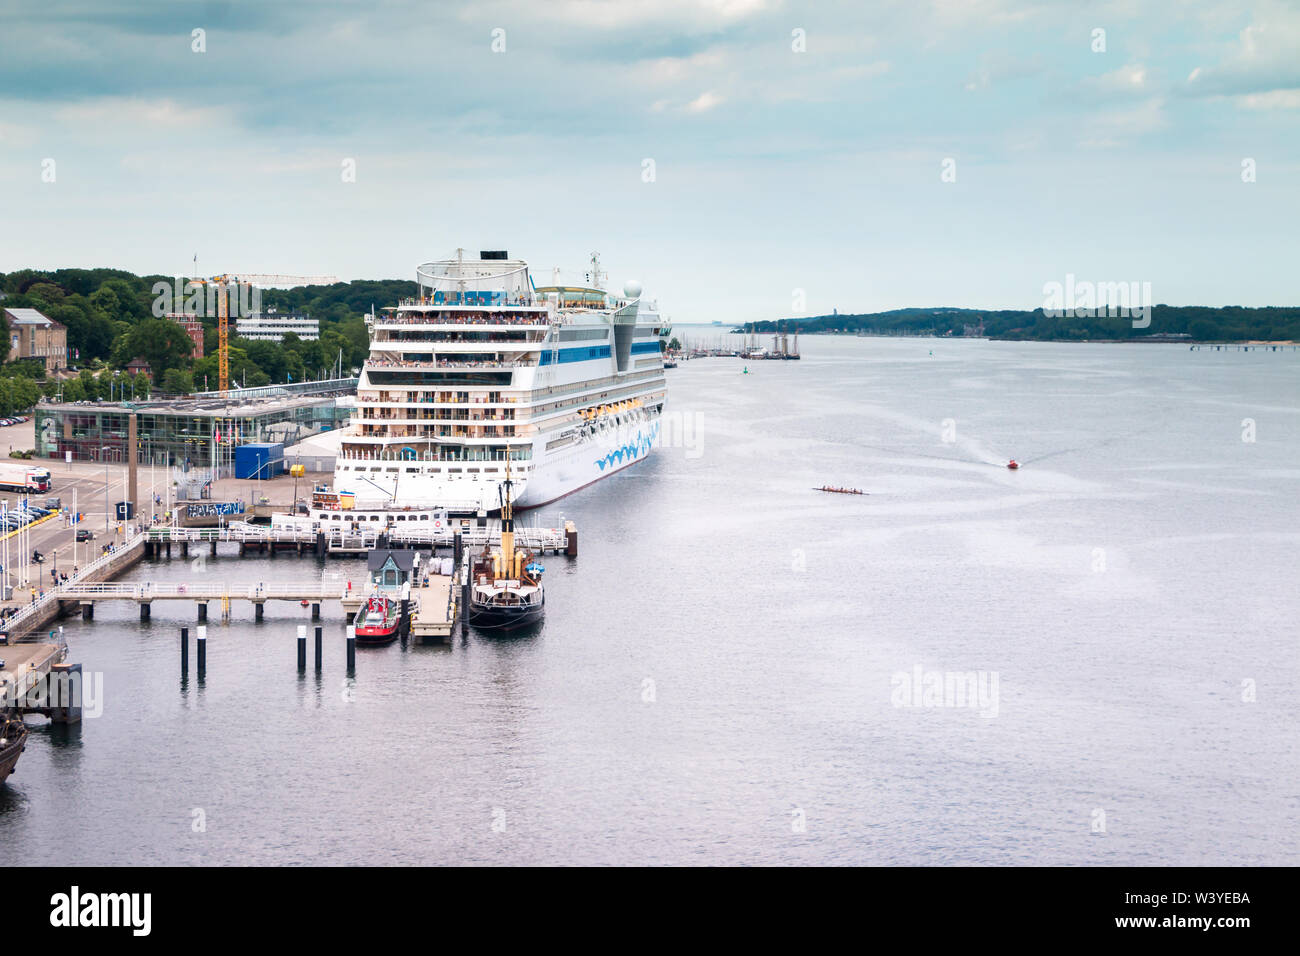 Hafen in Kiel, einer Stadt in Deutschland Stockfoto